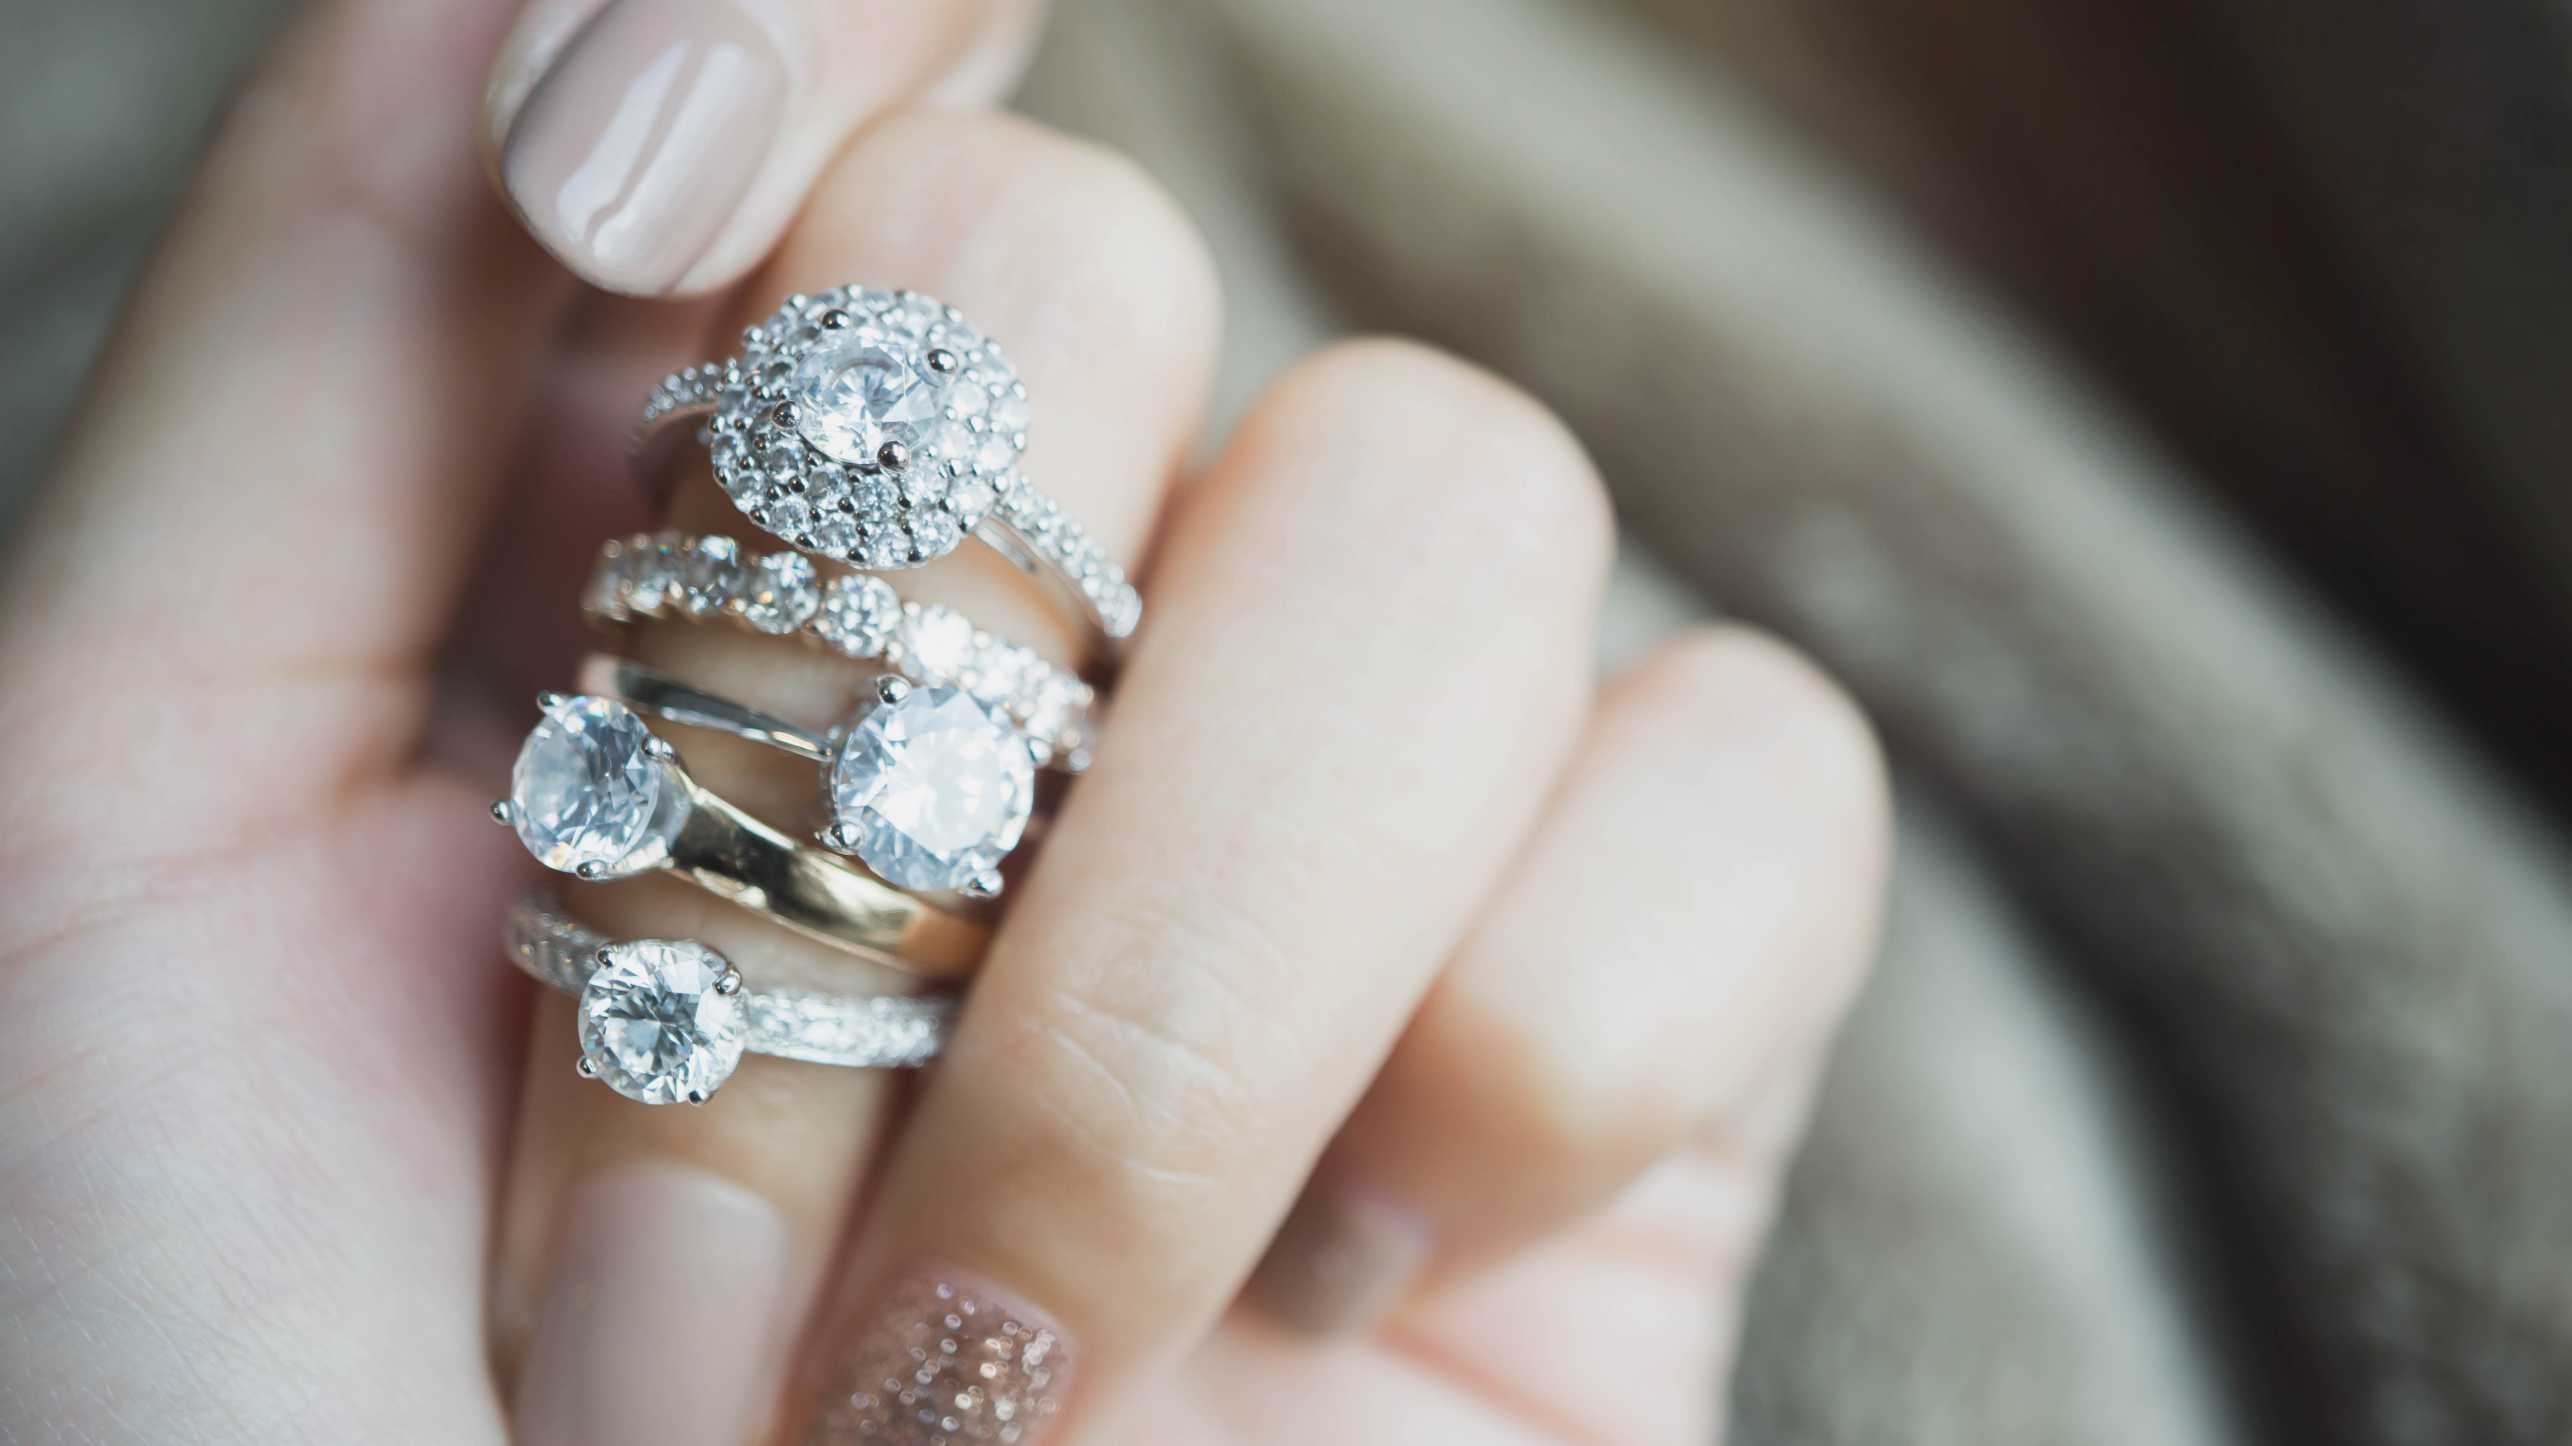 Vergr?sserte Ansicht: Eine Frauenhand mit vielen Diamantringen